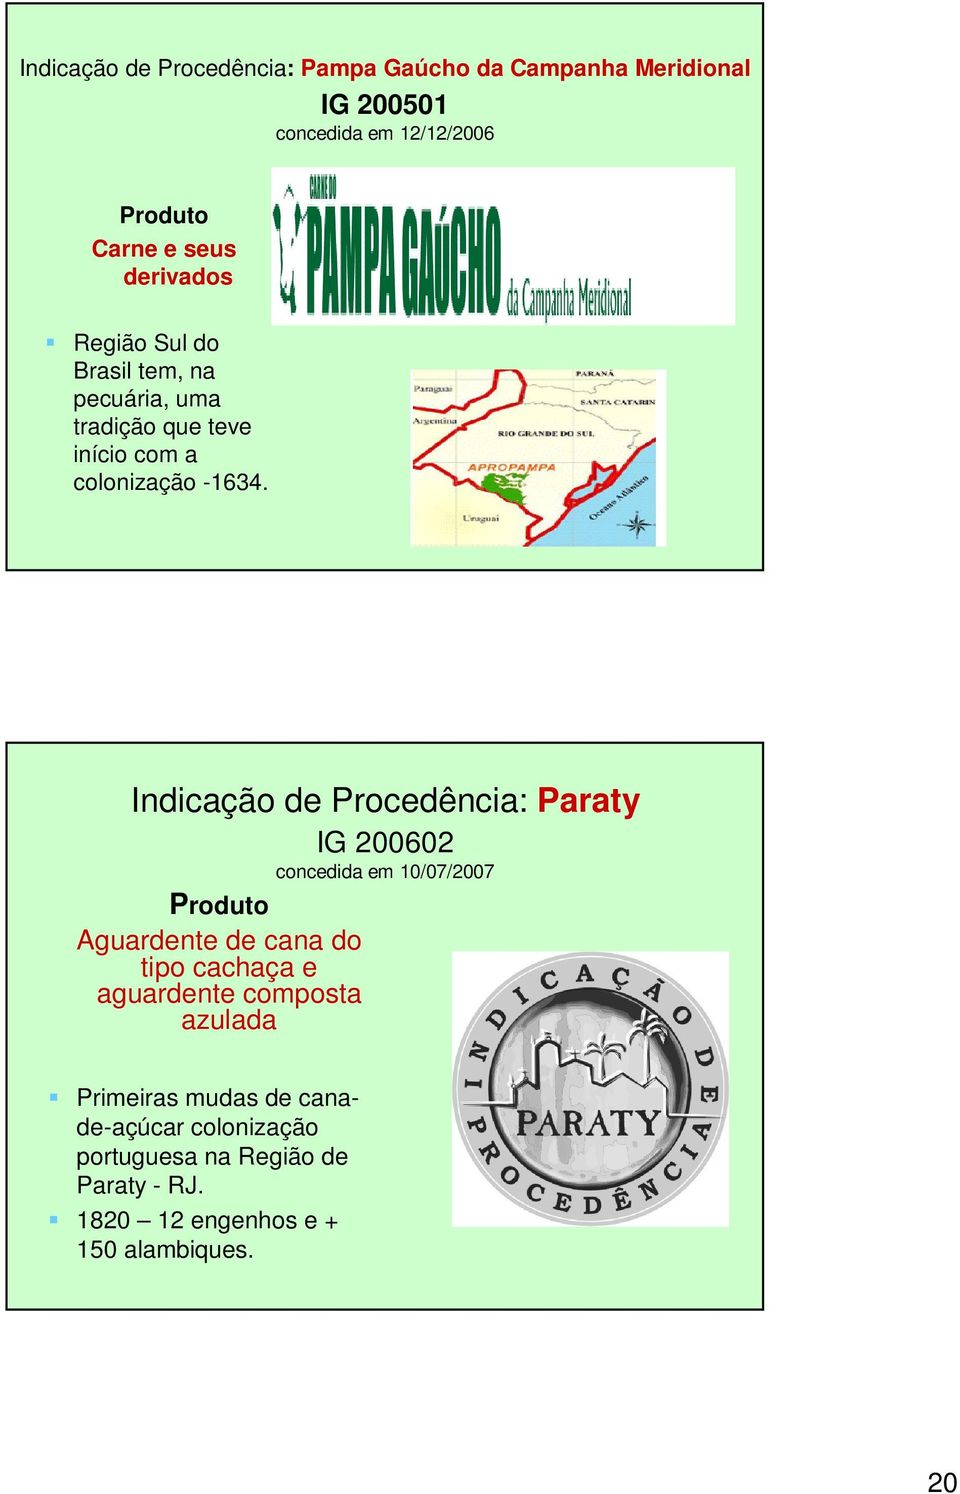 Indicação de Procedência: Paraty IG 200602 concedida em 10/07/2007 Produto Aguardente de cana do tipo cachaça e